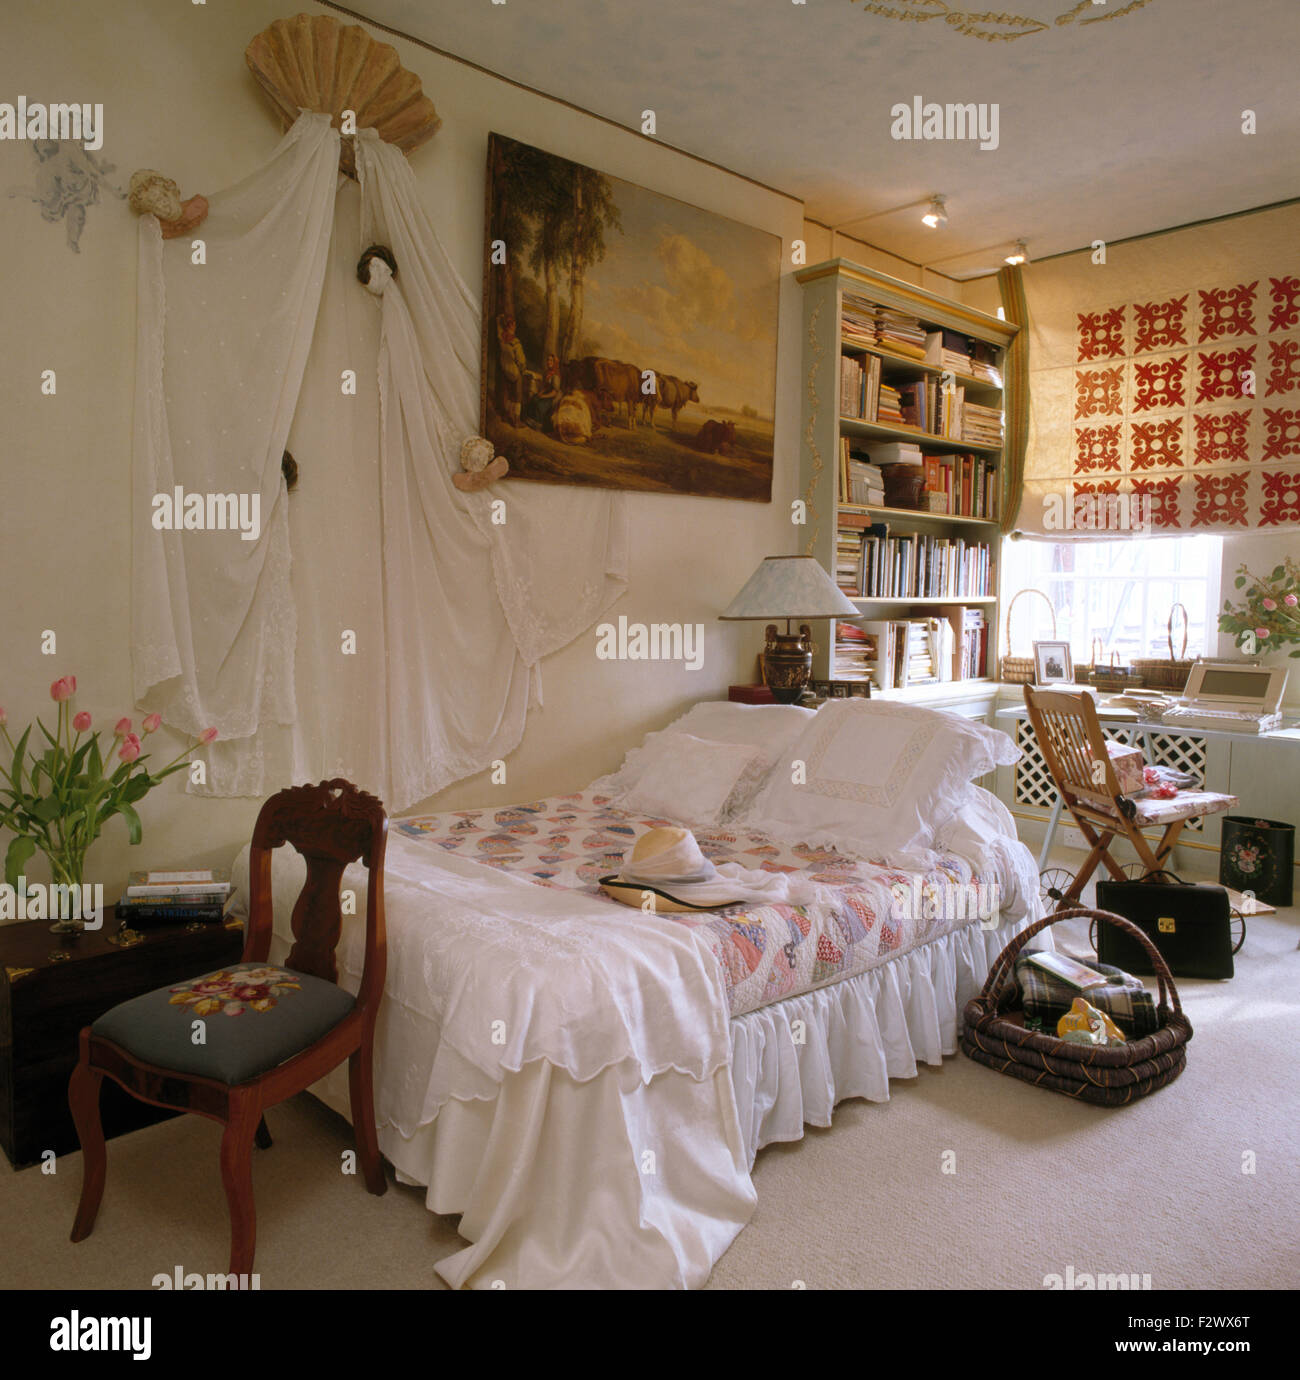 Weiße Vorhänge an Wand über dem Bett mit weißem Leinen und ein Flickenteppich in einem 80er Jahre Wohnung Schlafzimmer Stockfoto